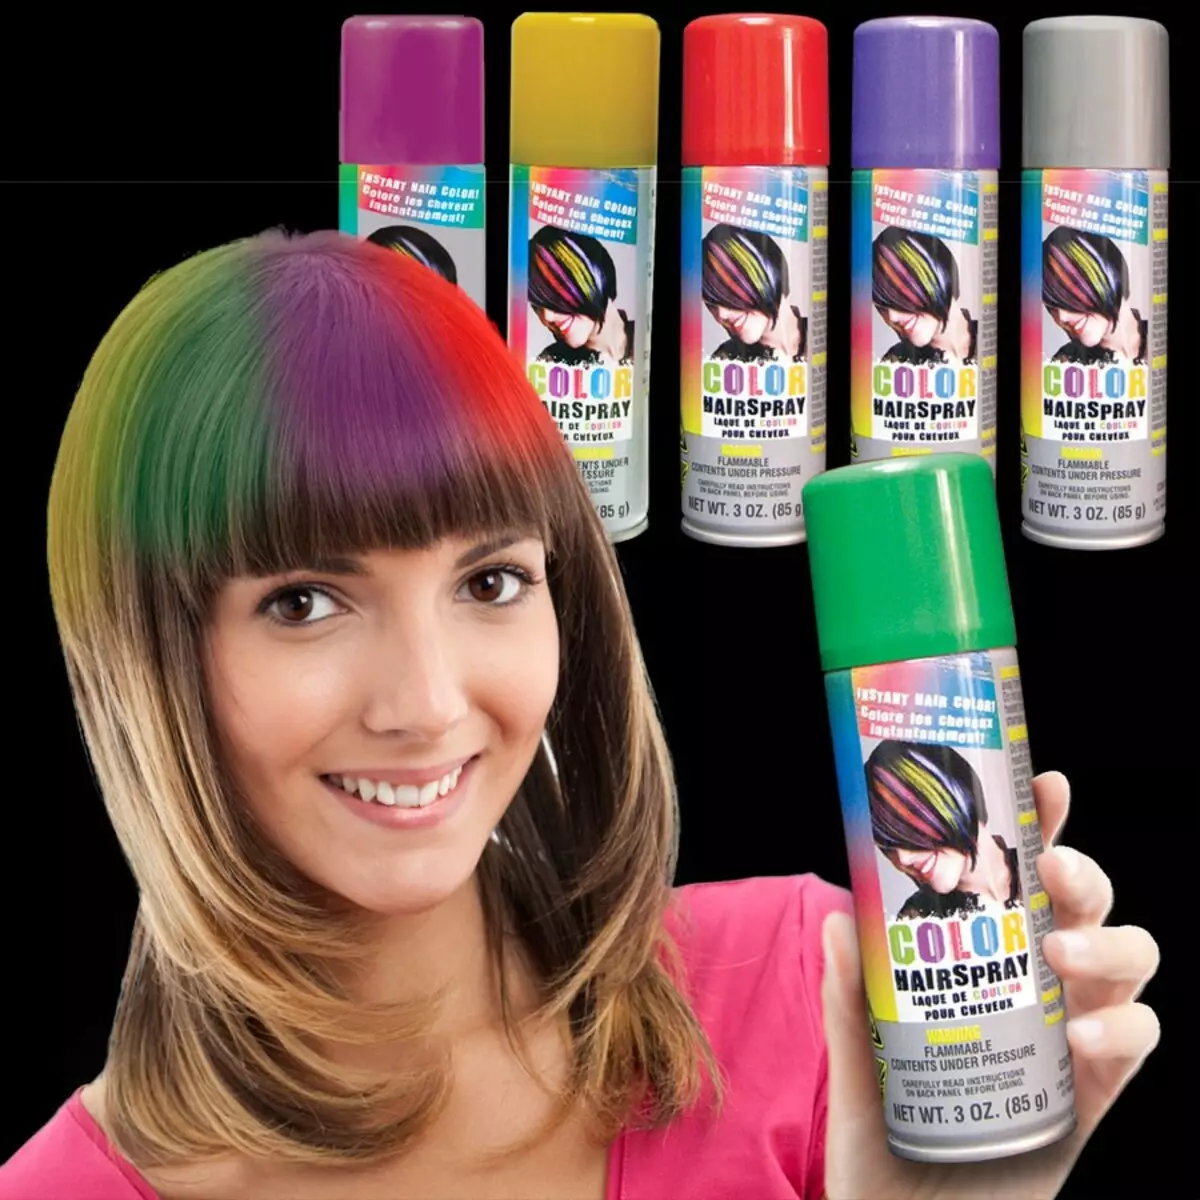 Ψεκασμός μαλλιών: Επιλέγοντας χρώματα σε μπαλόνια καθαρισμού για ρίζες μαλλιών. Χαρακτηριστικά του έγχρωμου χρώματος μιας ημέρας 5444_37